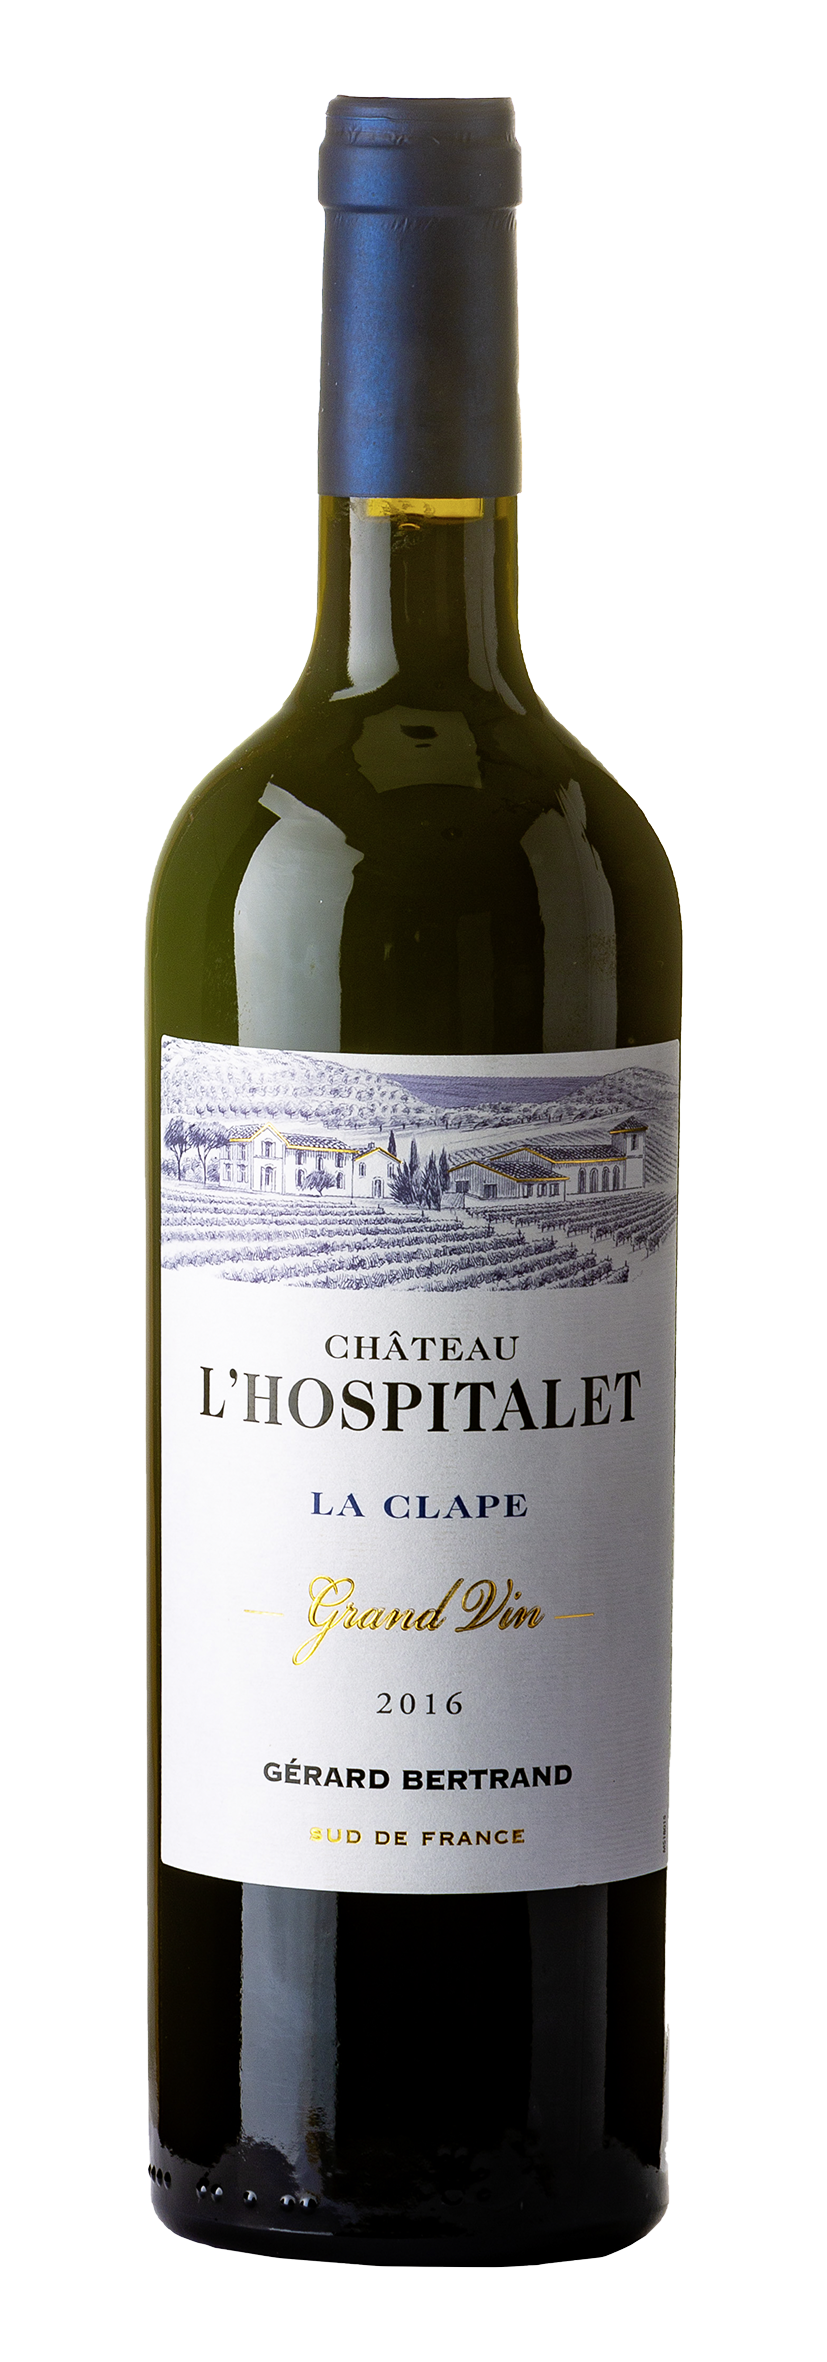 La Clape AOP Château L'Hospitalet Grand Vin 2016